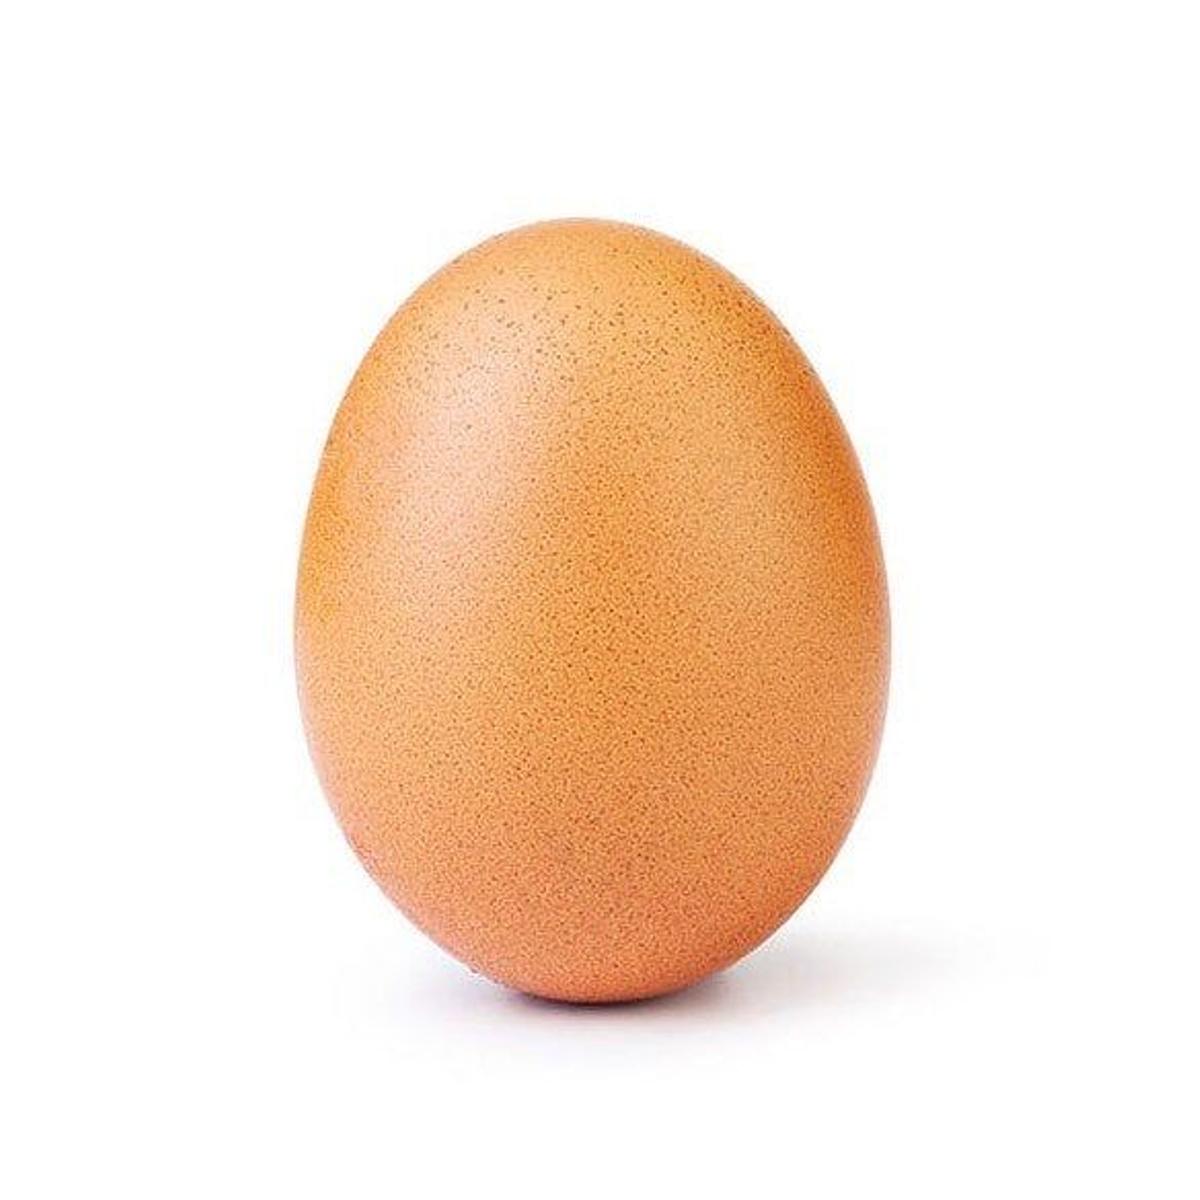 El famoso huevo sobre fondo blanco que batió todos los récords de likes en Instagram